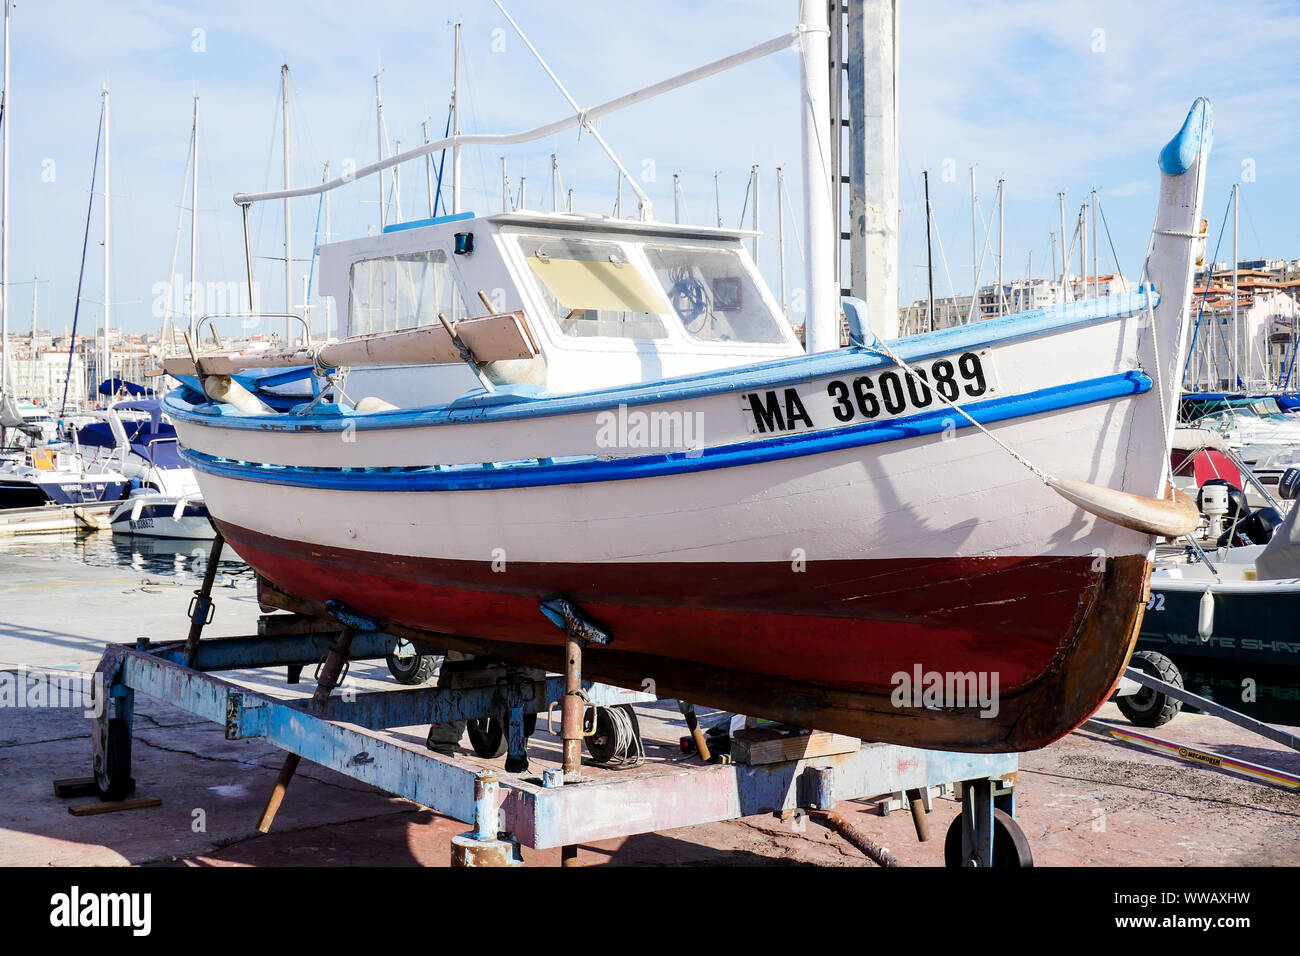 Fishermen boat undergoing repairs, Le Vieux Port, Marseille, Bouches-du-Rhône, PACA, France Stock Photo